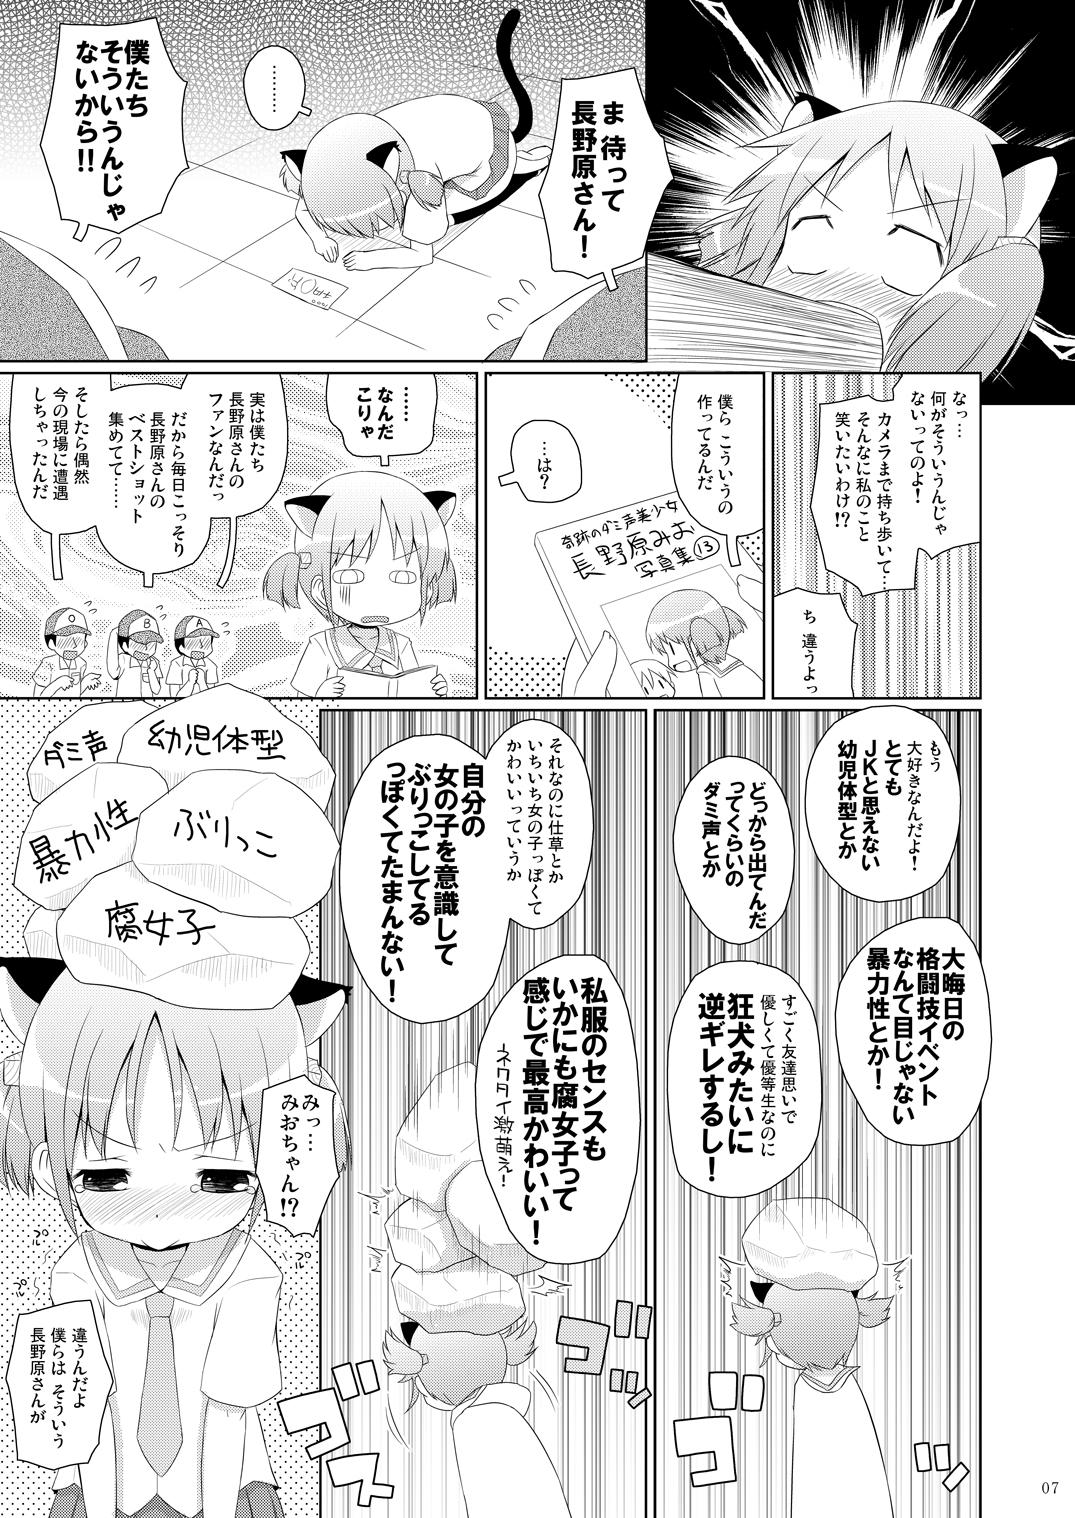 Hardcore Chanmio no Mainichi Diary. - Nichijou Retro - Page 6